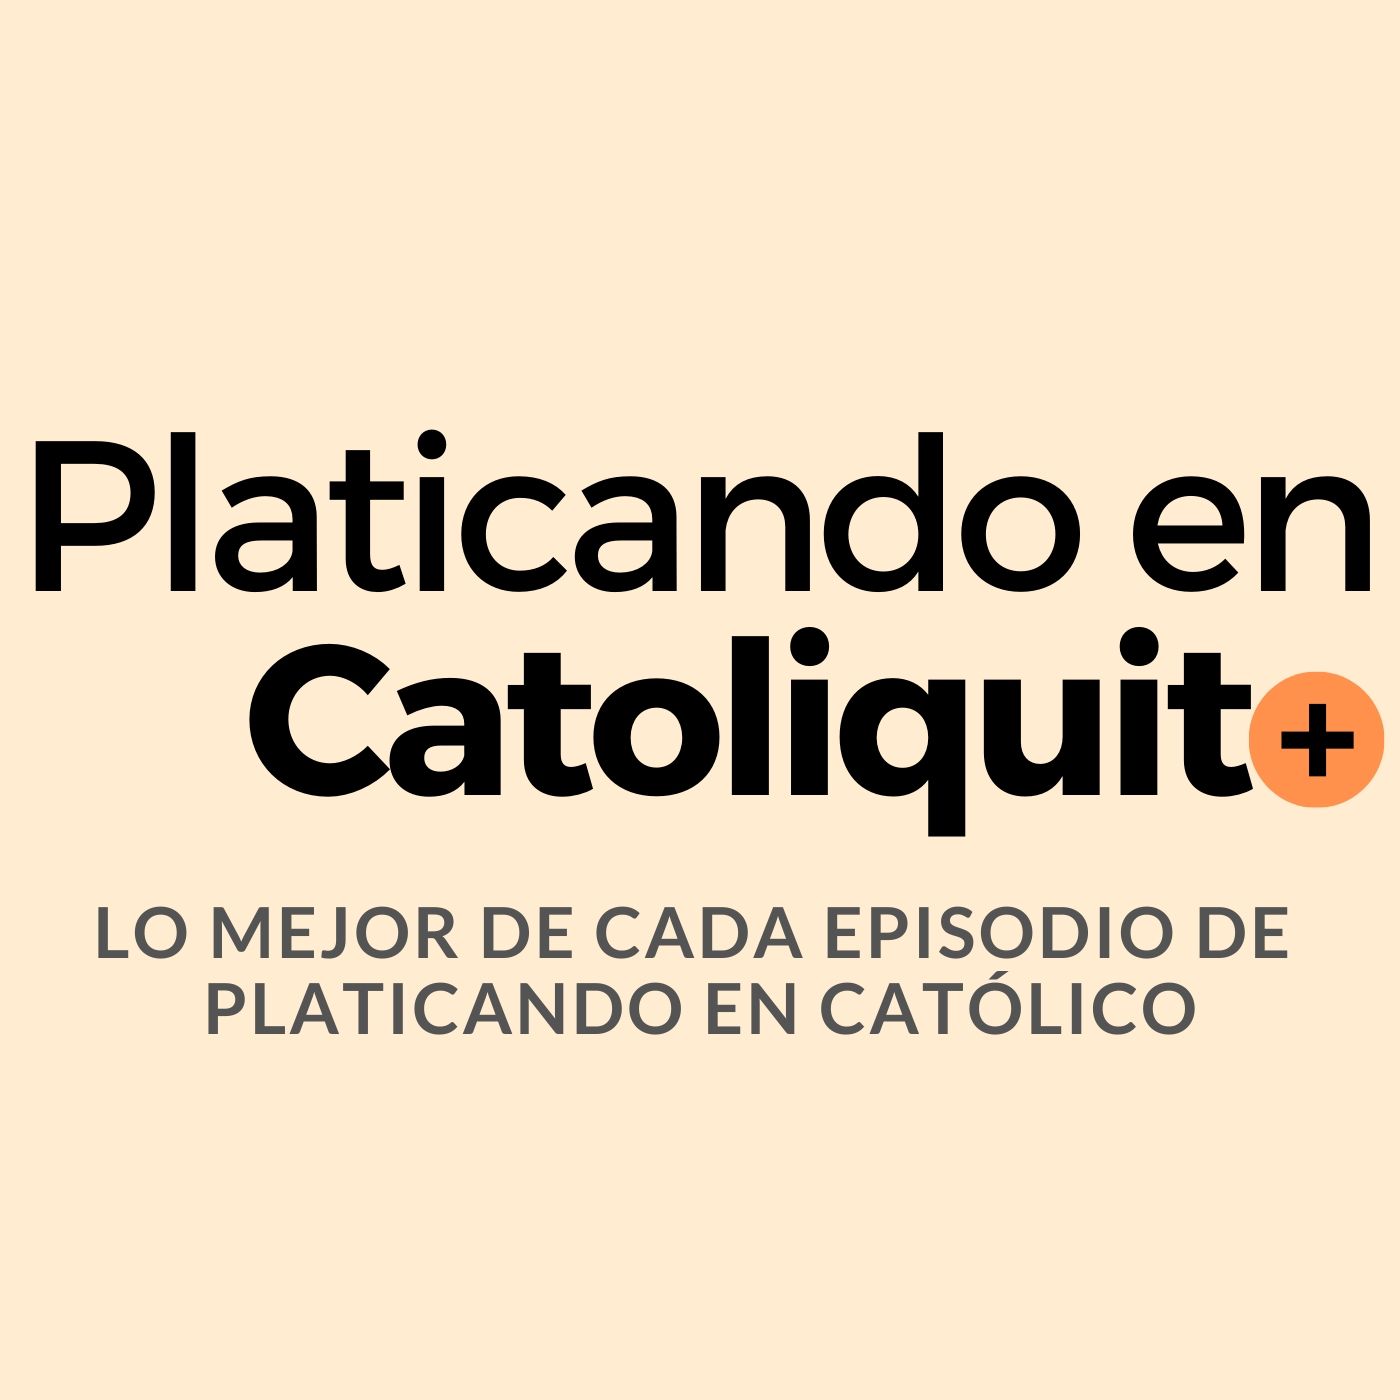 Artwork for Platicando en Catolicortito  + Lo mejor de cada episodio de Platicando en Católico, tu podcast católico +